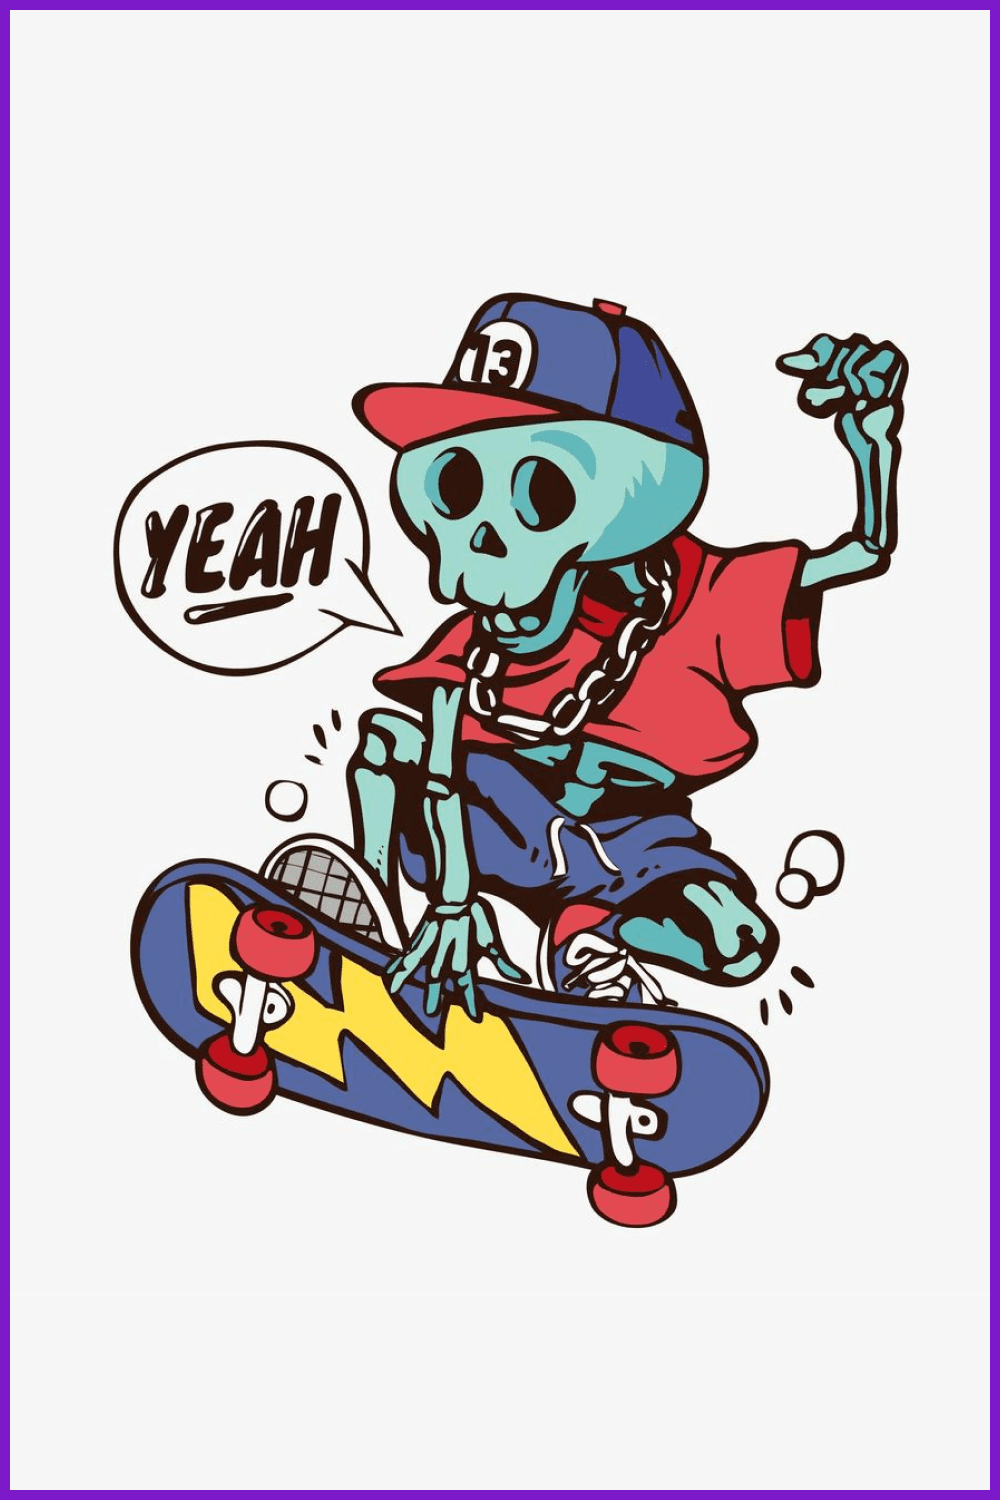 Cartoon skeleton in a cap on a skateboard.